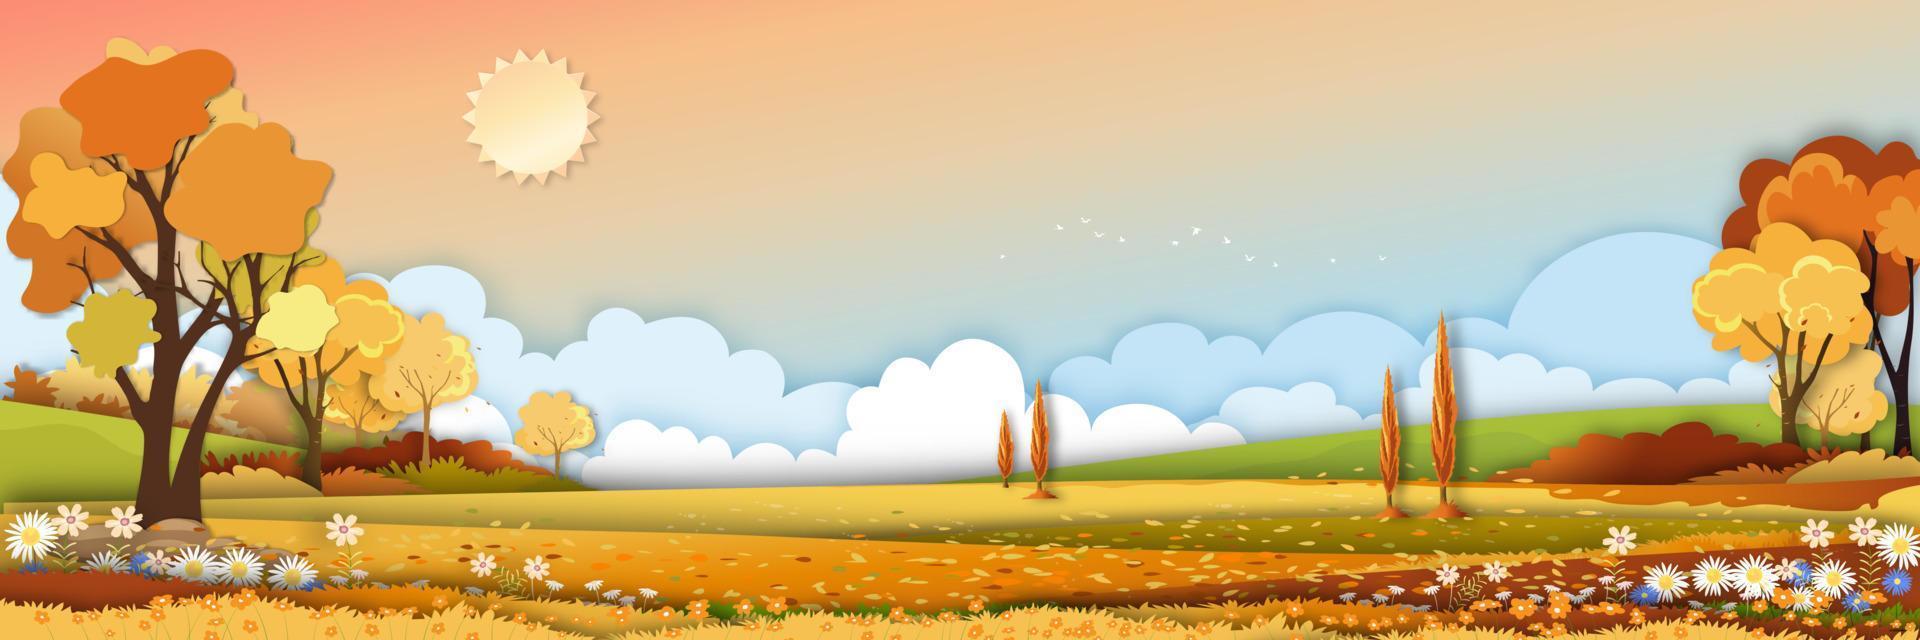 herfst landelijk landschap in avondlicht met zonsondergang, gele, oranje hemelachtergrond, vector pano cartoon herfstseizoen op platteland met bos boom en grasveld met zonsopgang, achtergrond natuurlijke banner